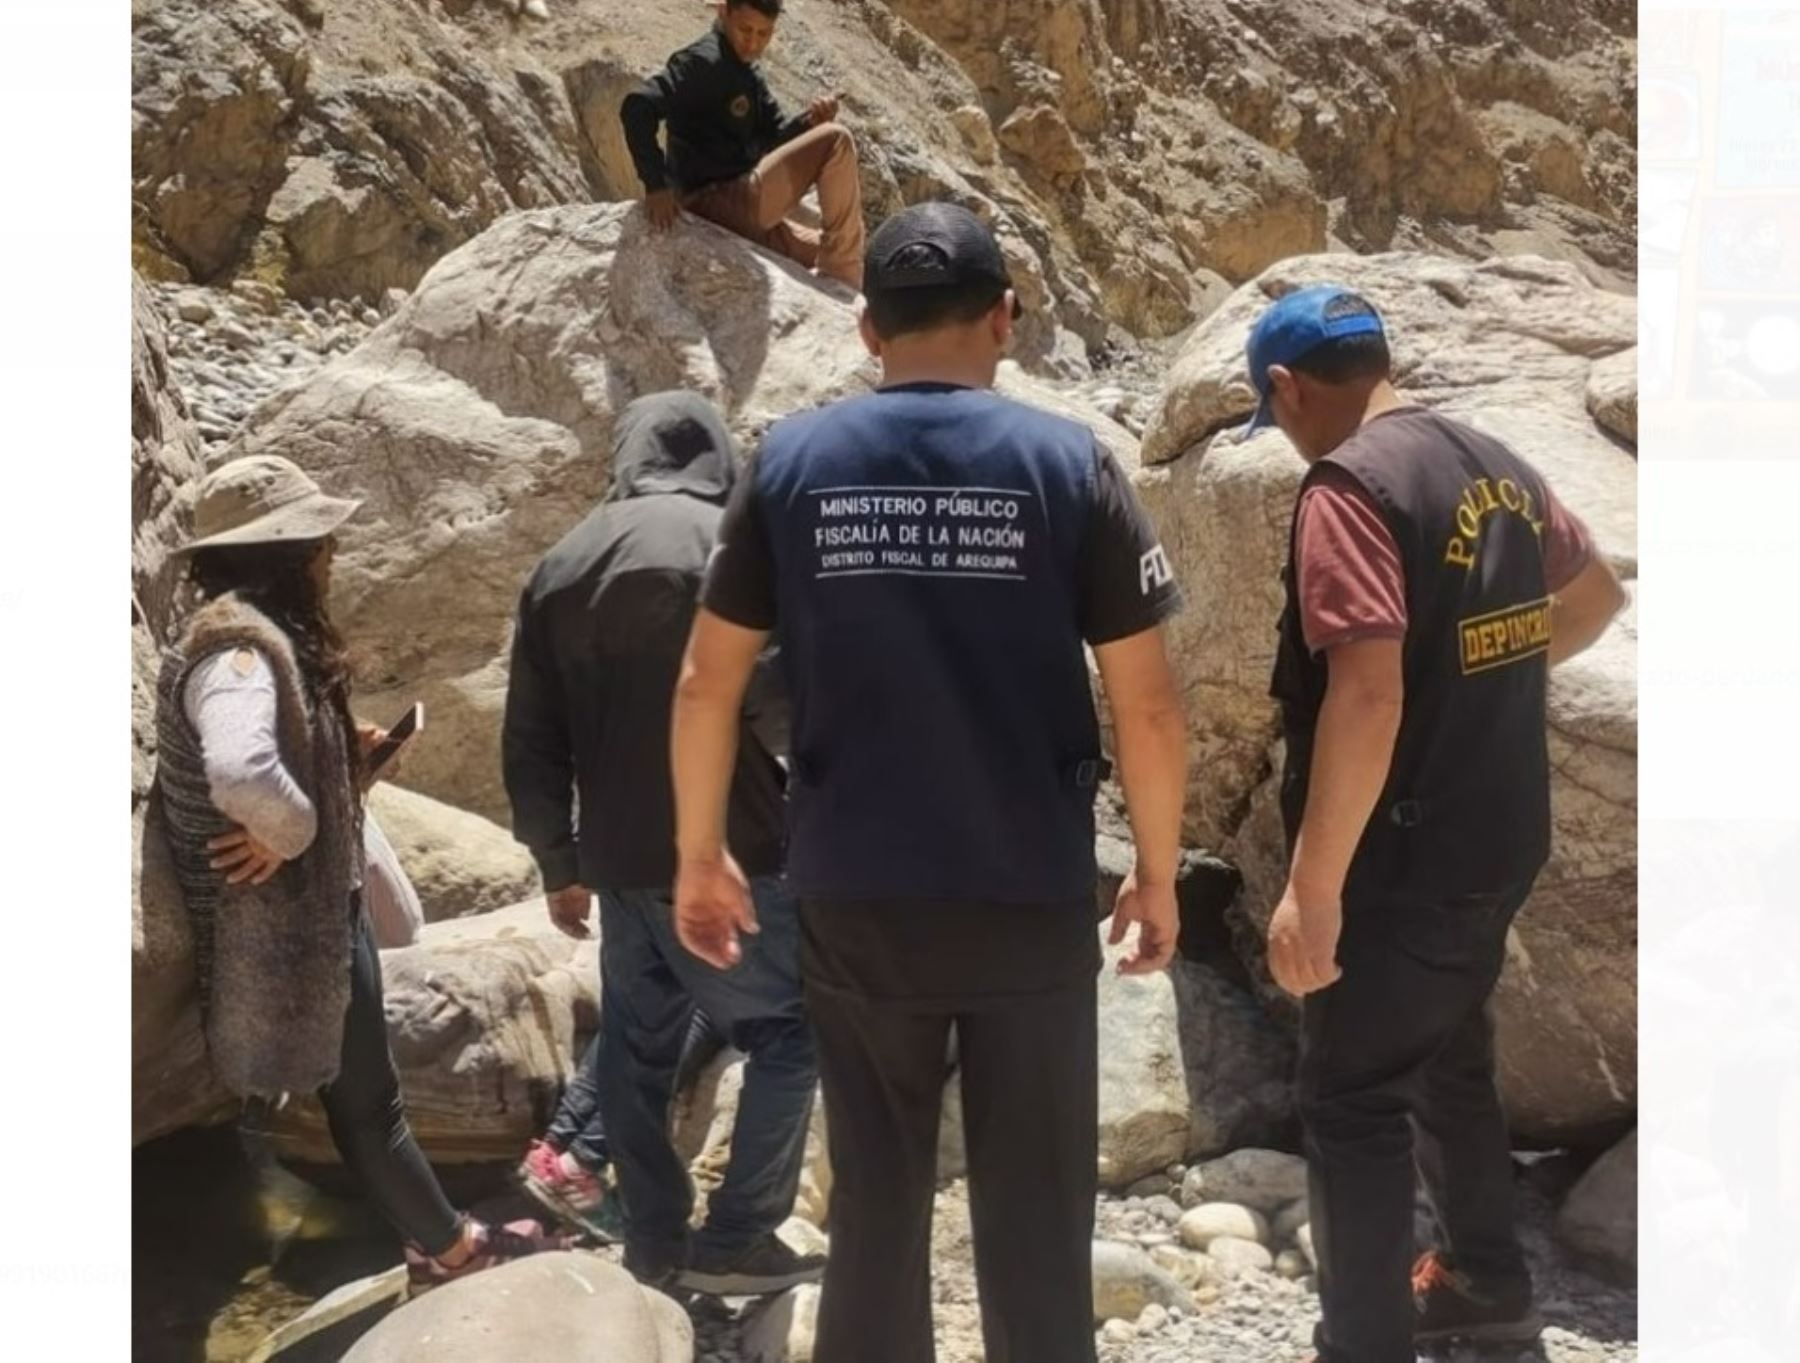 Arequipa: peritos determinarán identidad de restos humanos hallados en distrito de Huambo